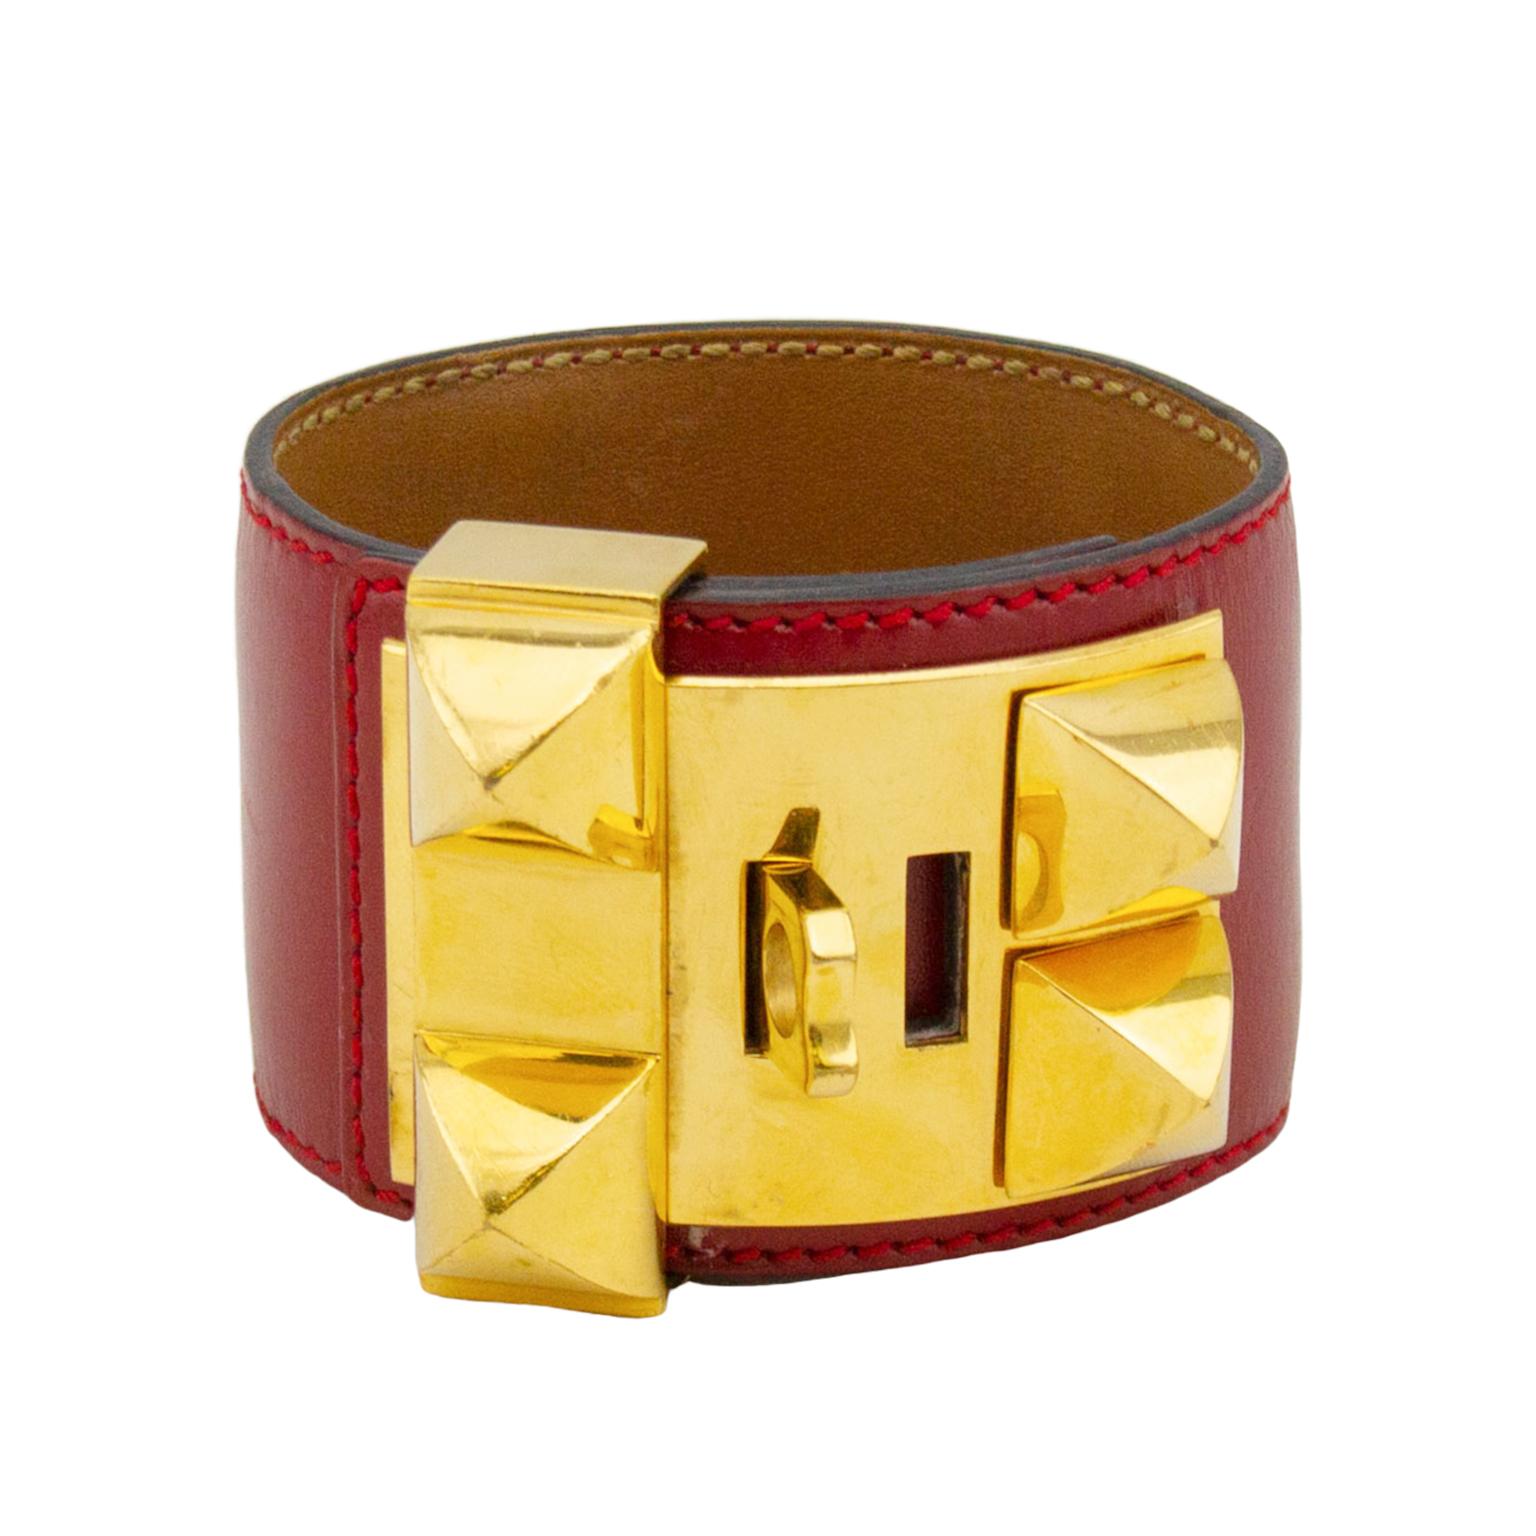 Das Collier de Chien-Armband von Hermes ist ein klassisches Schmuckstück, das man einfach haben muss. Diese Manschette aus rotem Boxleder hat goldfarbene Beschläge und kann auf 4 verschiedene Einstellungen eingestellt werden. Die Unterseite des